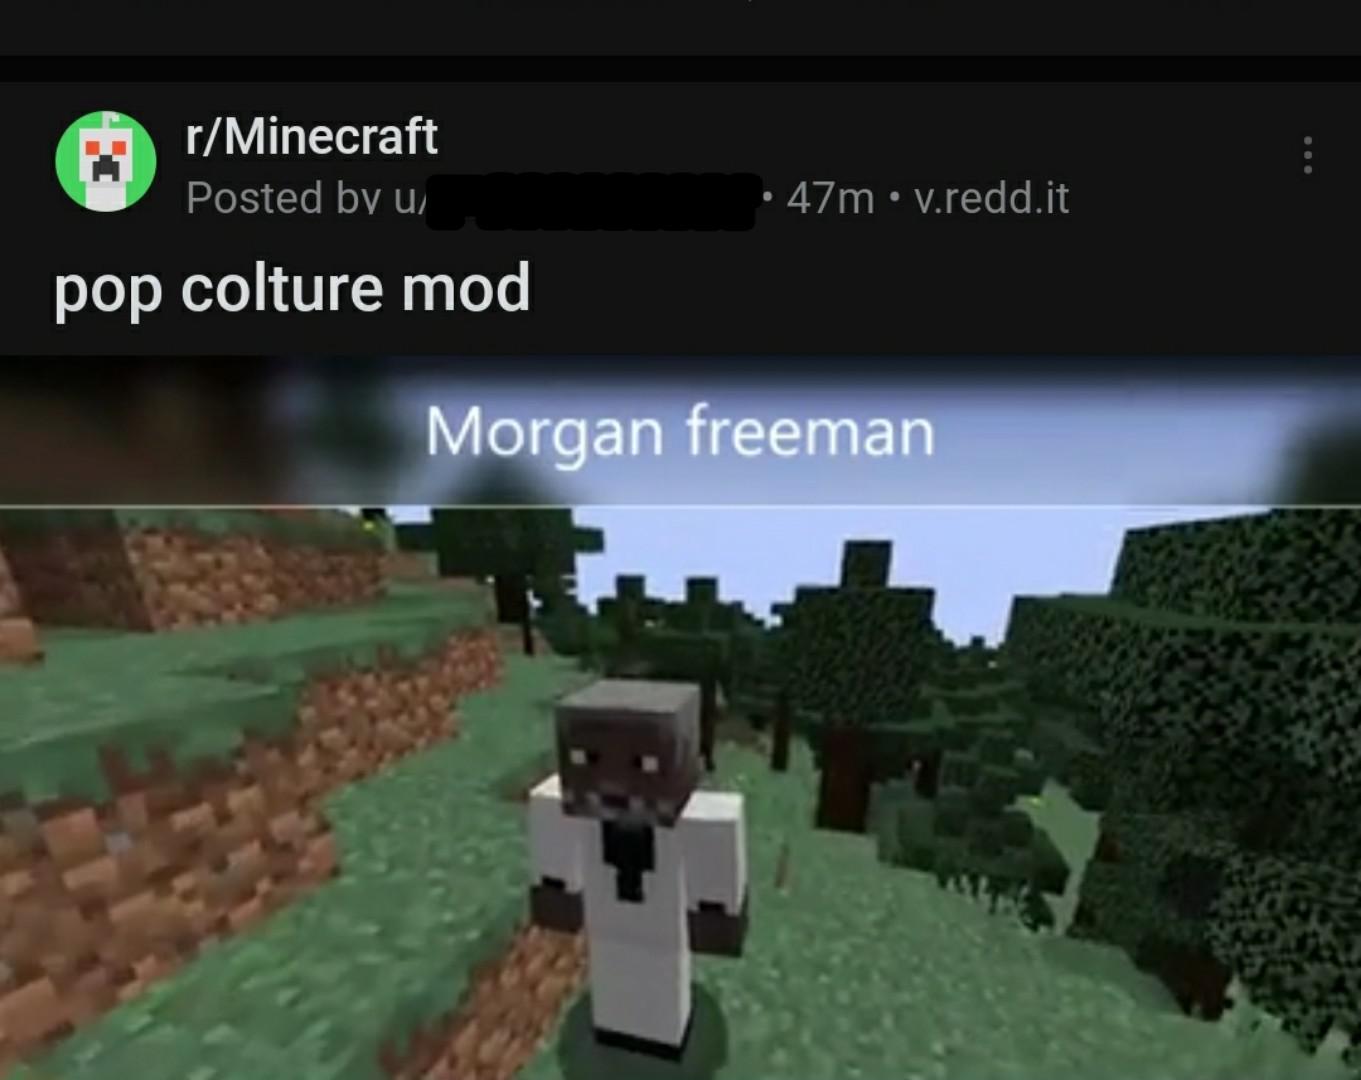 Cringe,  cringe memes Cringe,  text: r/Minecraft Posted bv w pop colture mod • 47m • v.redd.it Morgan freeman 